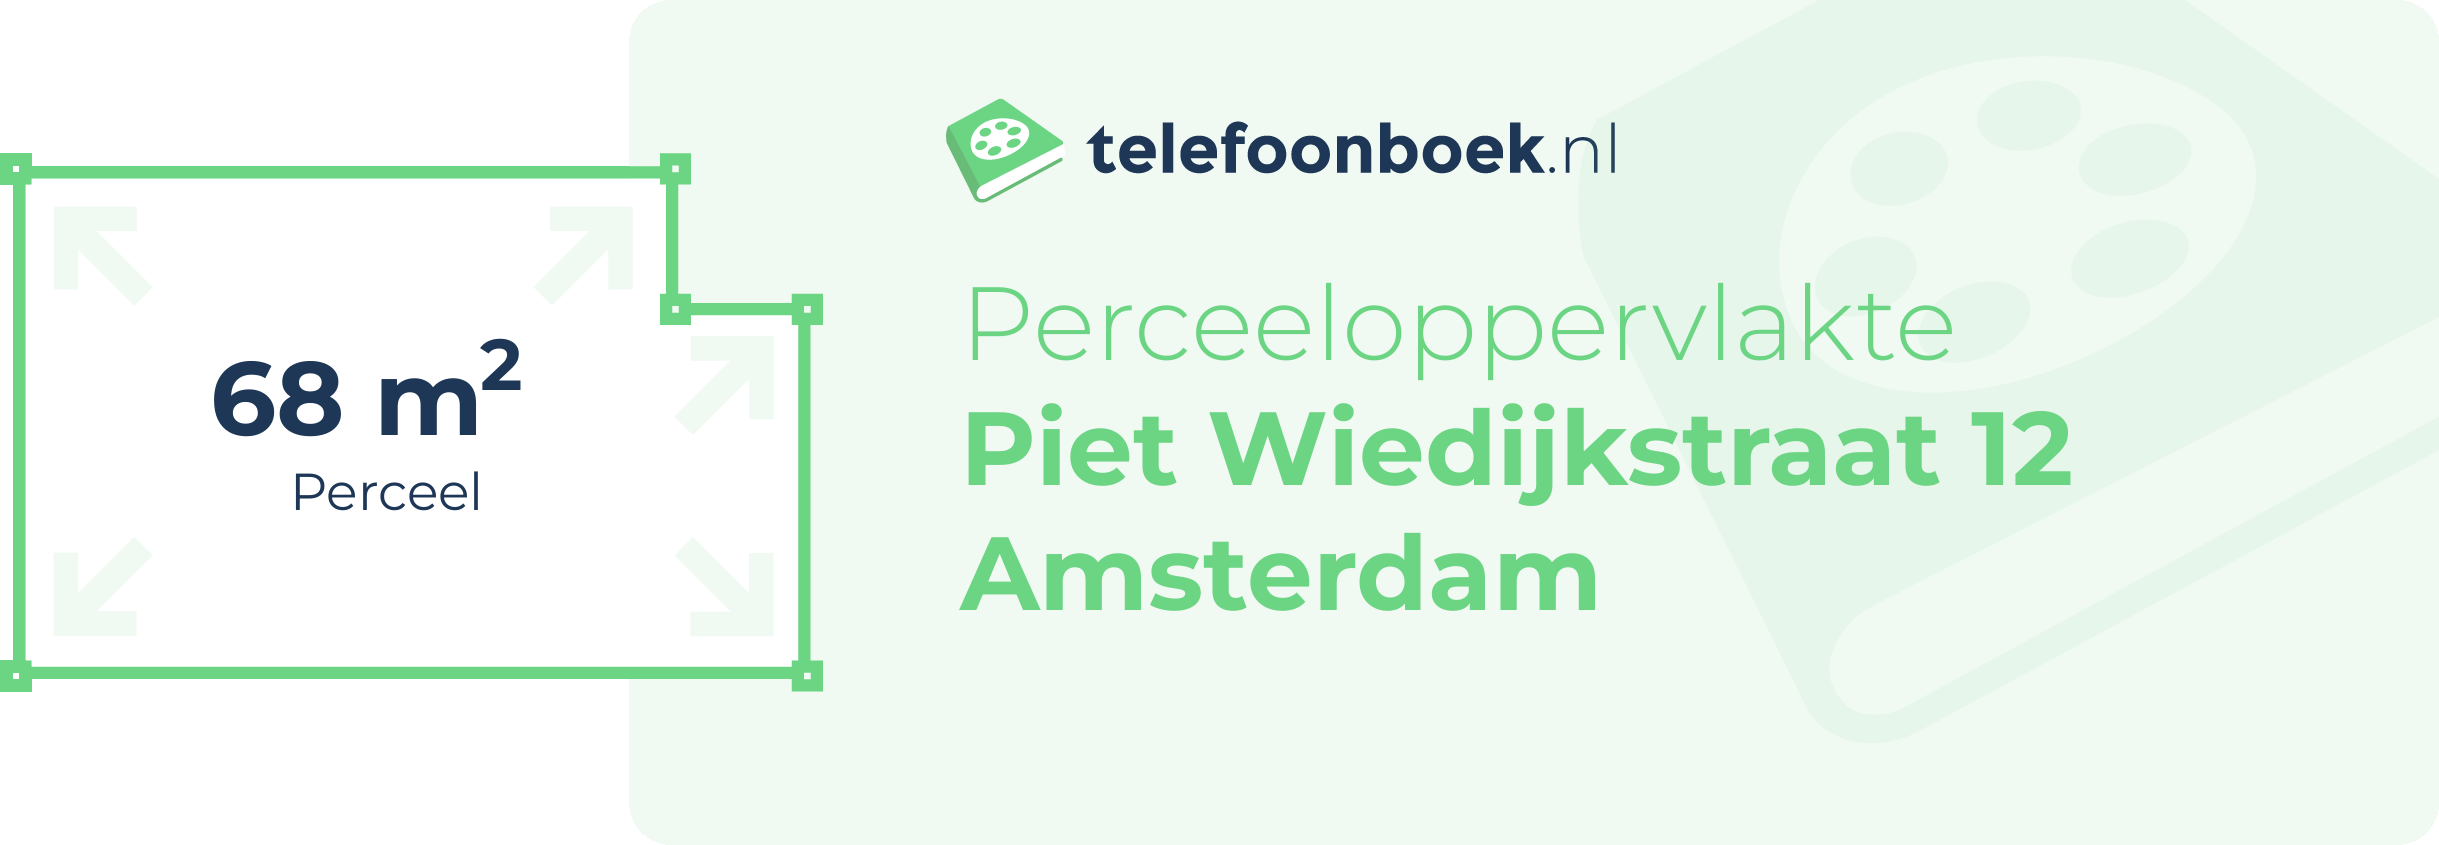 Perceeloppervlakte Piet Wiedijkstraat 12 Amsterdam